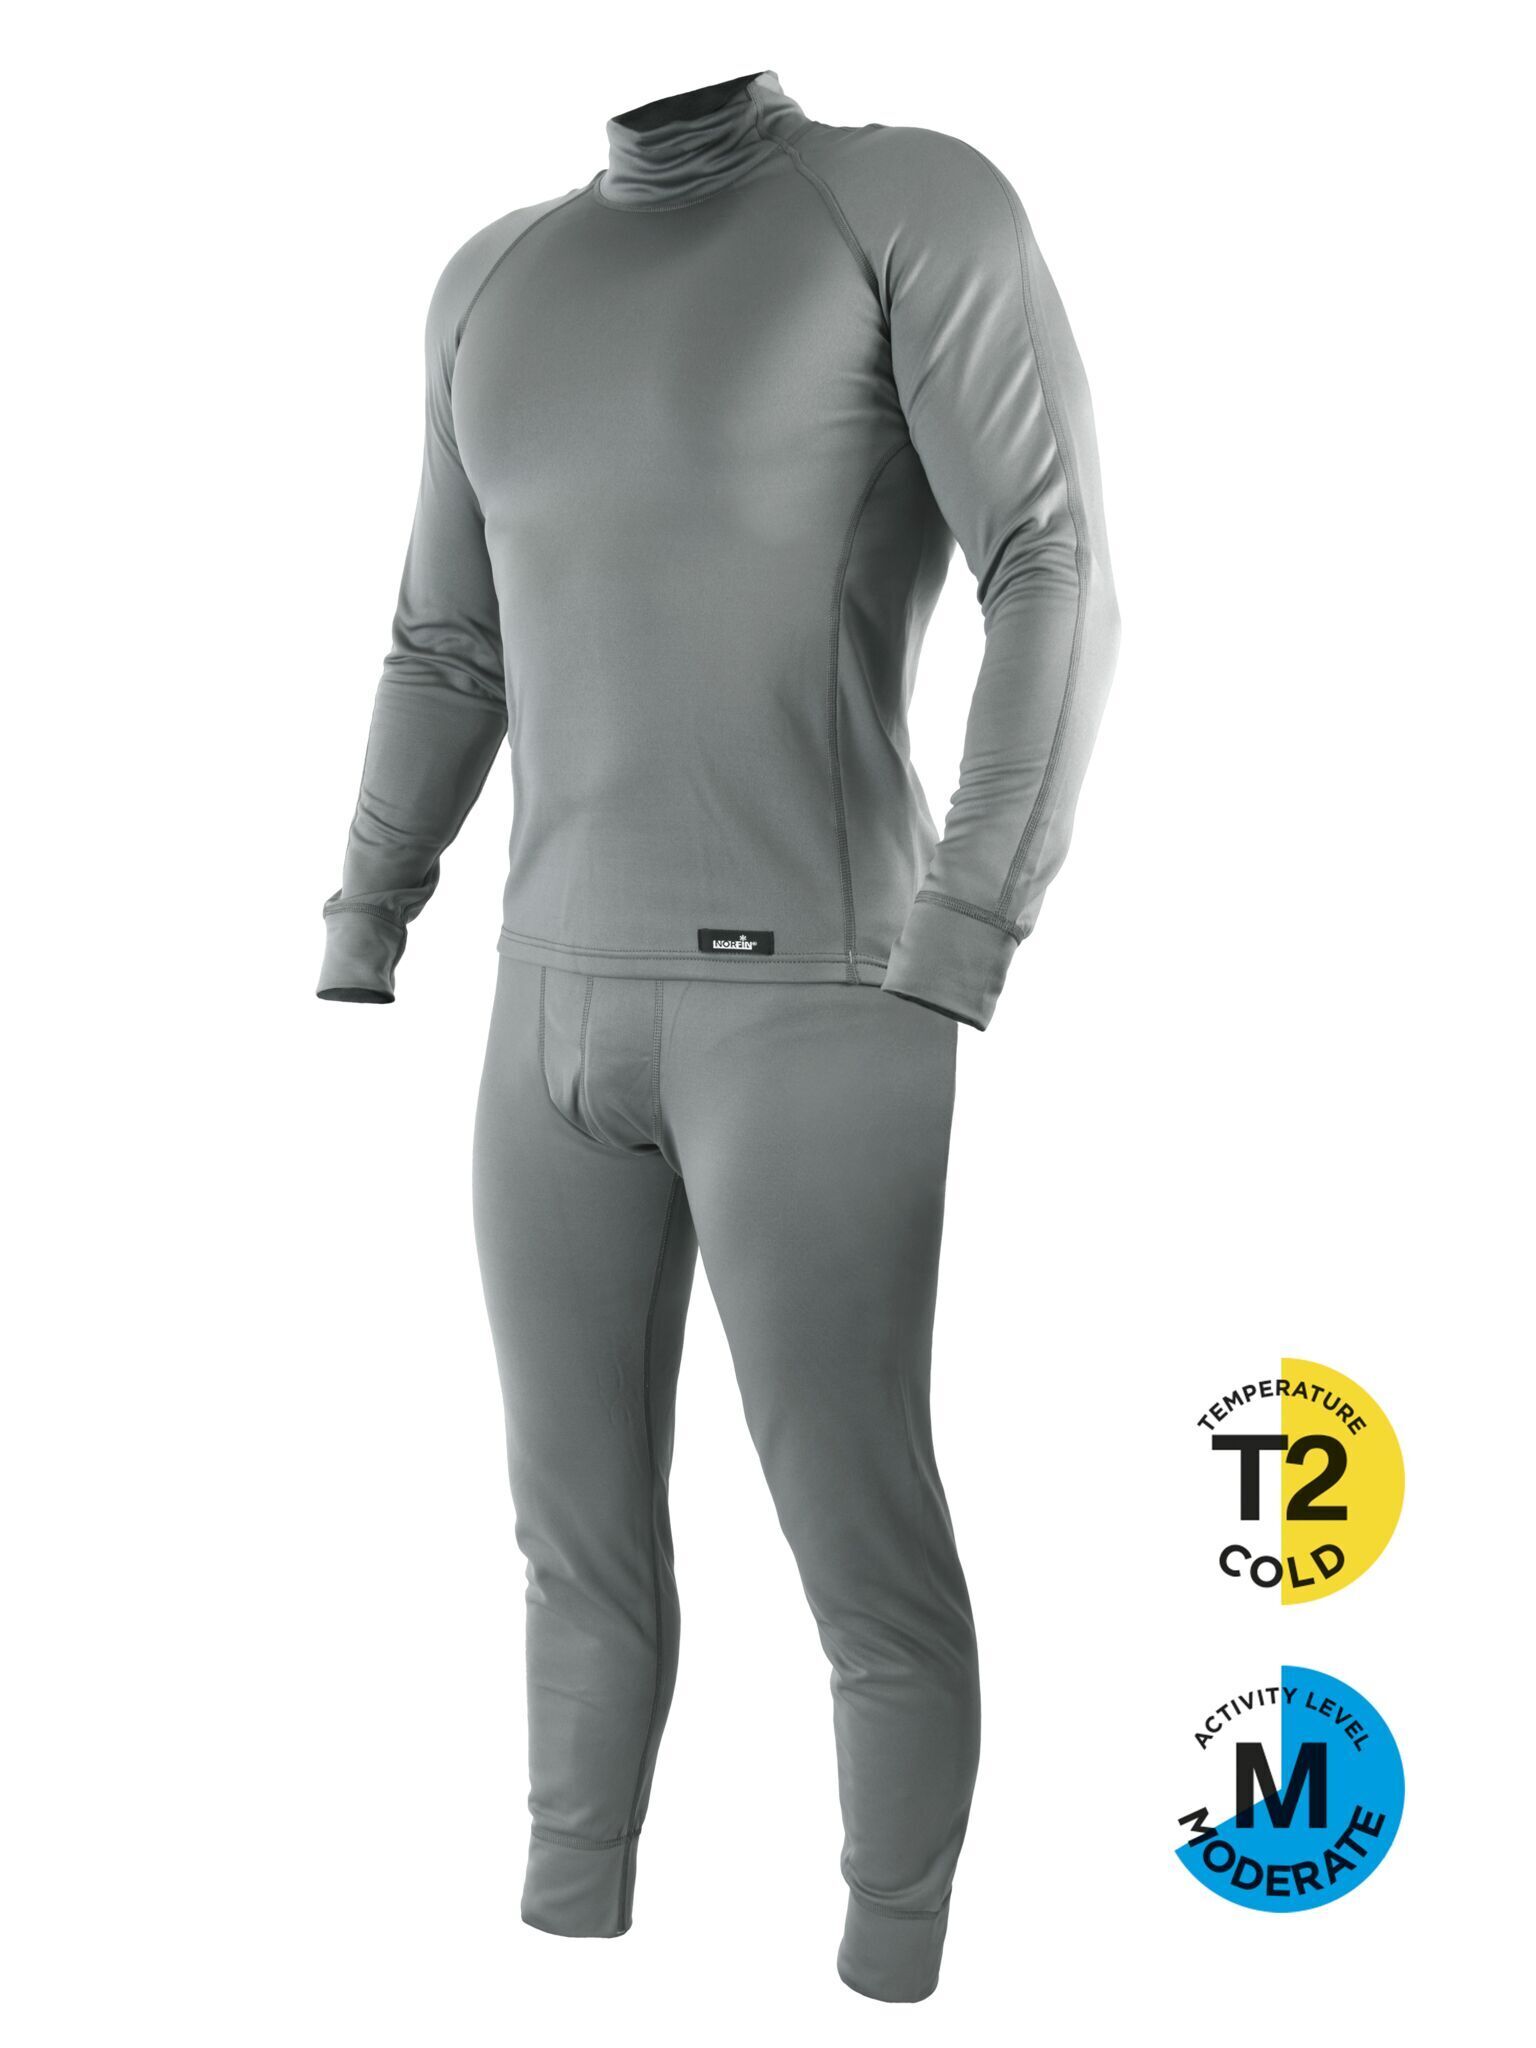 Термобелье Norfin Polar Pro Gray, размер M - купить в официальноминтернет-магазине Feeder Concept